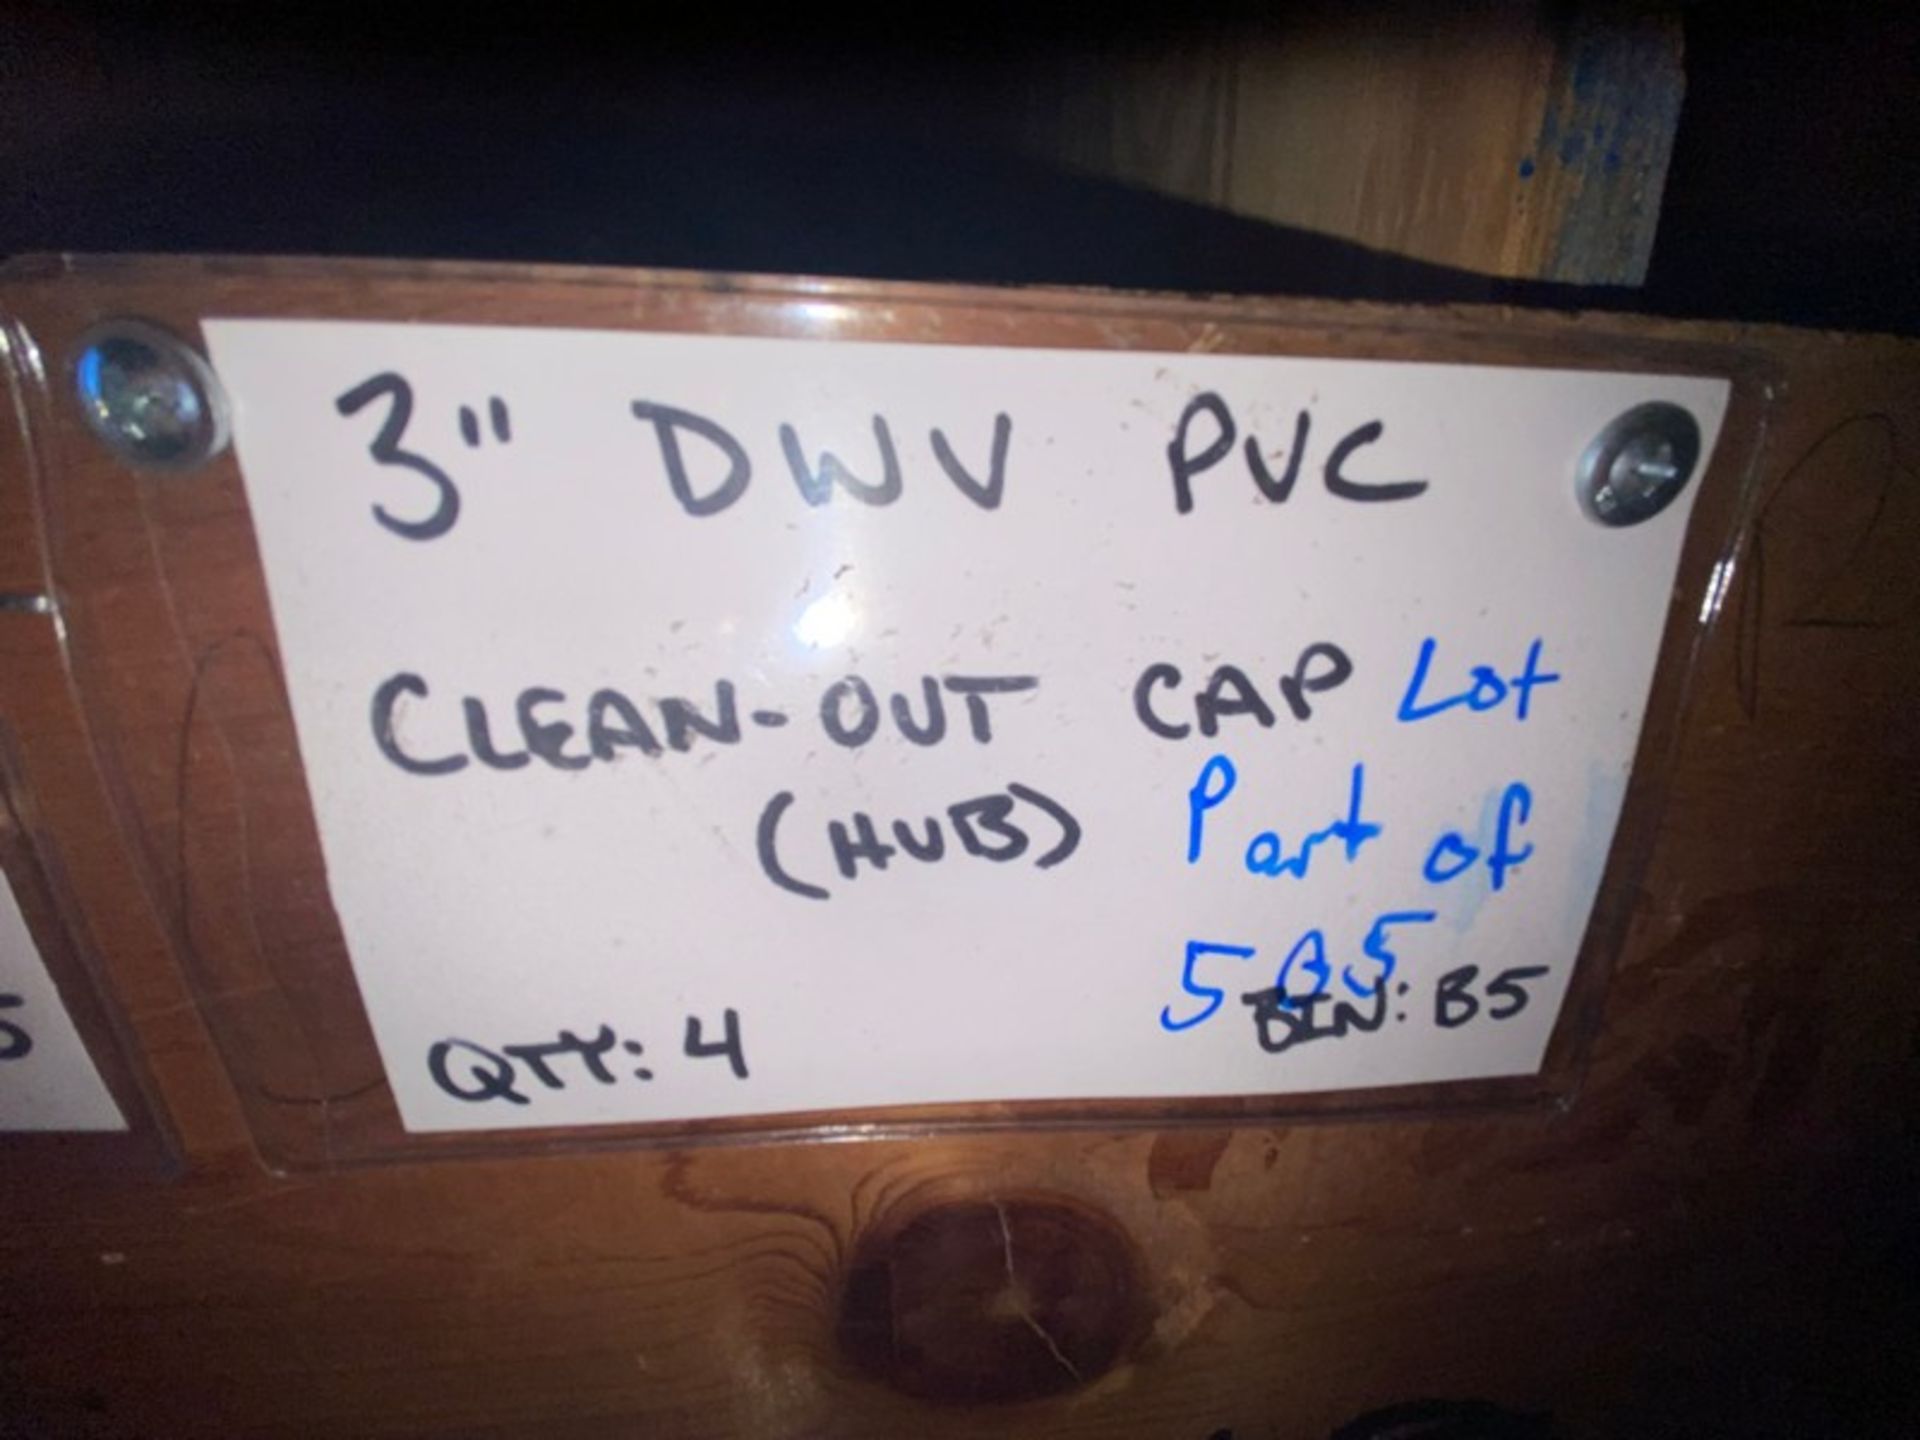 (12) 3” DWV PVC Clean-out cap (STREET) (Bin: B5), Includes (4) 3” DWV PVC Clean-Out Cap (HUB) (BIN: - Image 7 of 8